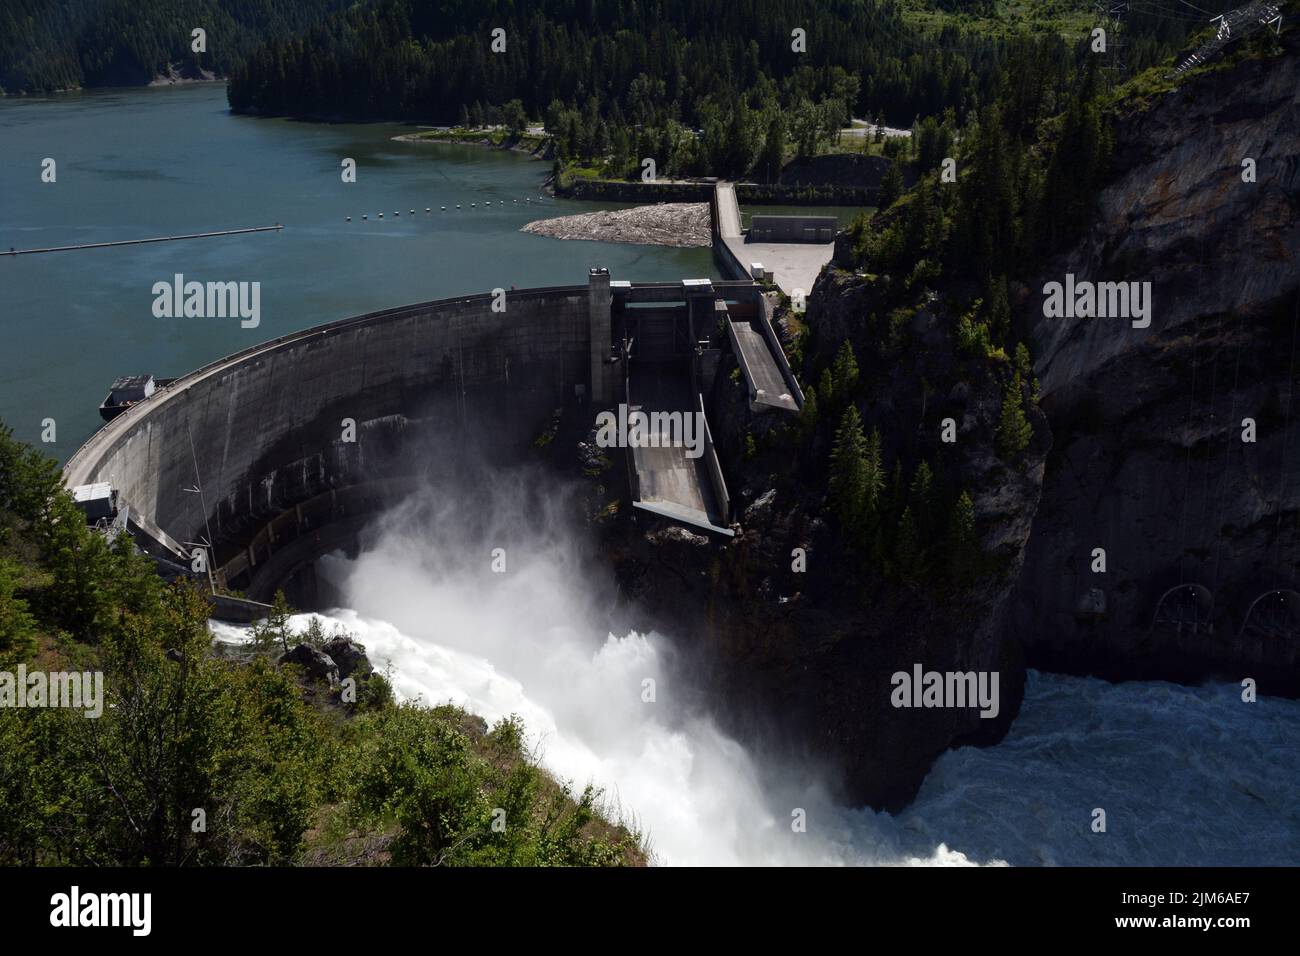 Vista aérea del arco de hormigón hidroeléctrica Boundary Dam derramando agua sobre el río Pend-Oreille, que fluye hacia Canadá, en el estado de Washington, EE.UU. Foto de stock